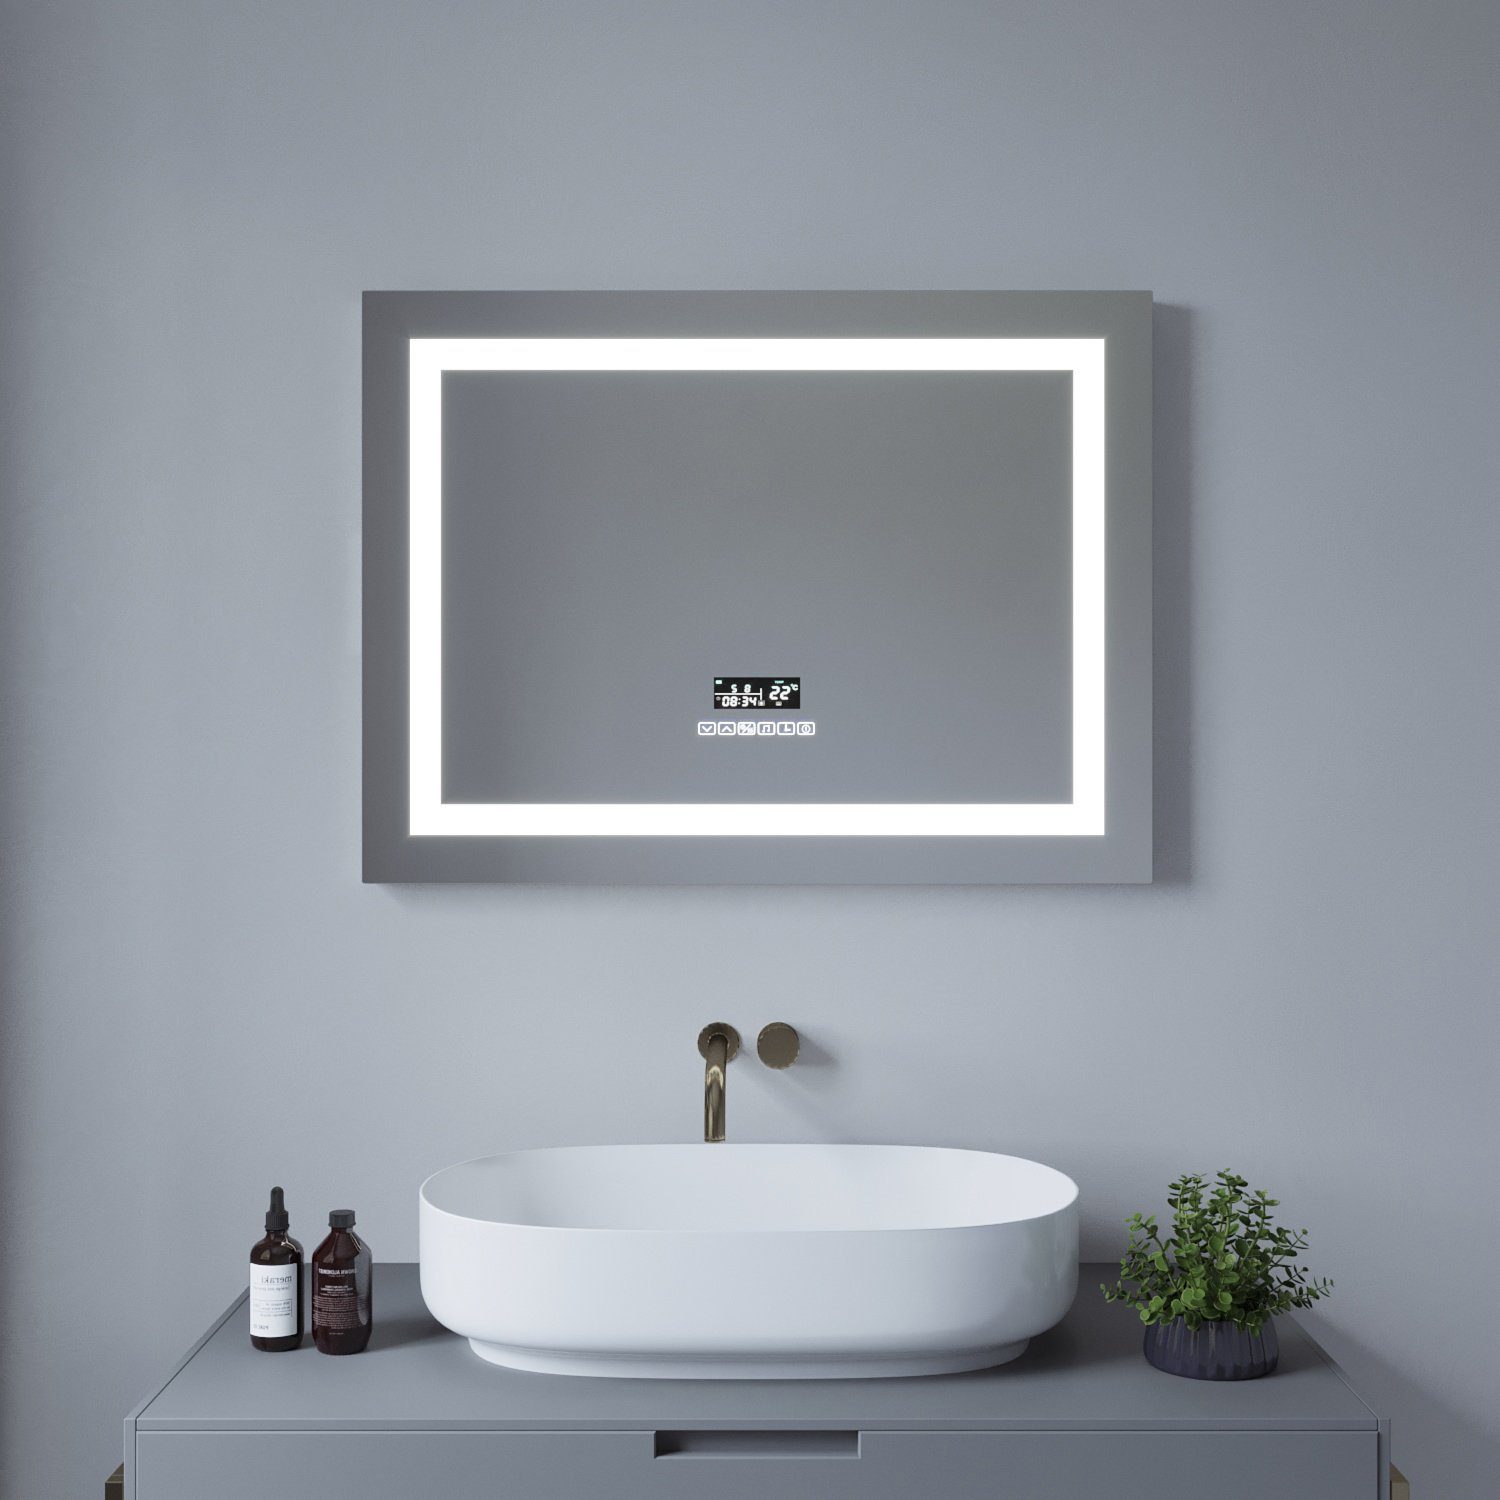 aqua batos Badspiegel LED Badspiegel mit Beleuchtung Badezimmerspiegel  Touch Led Bad Spiegel mit Licht Lichtspiegel 80x60cm Wandspiegel, Kaltweiß  6400K, Neutralweiß 4500k, Warmweiß 3000K, Bluetooth Lautsprecher, Analog-  oder Digitaluhr, Anzeige von ...